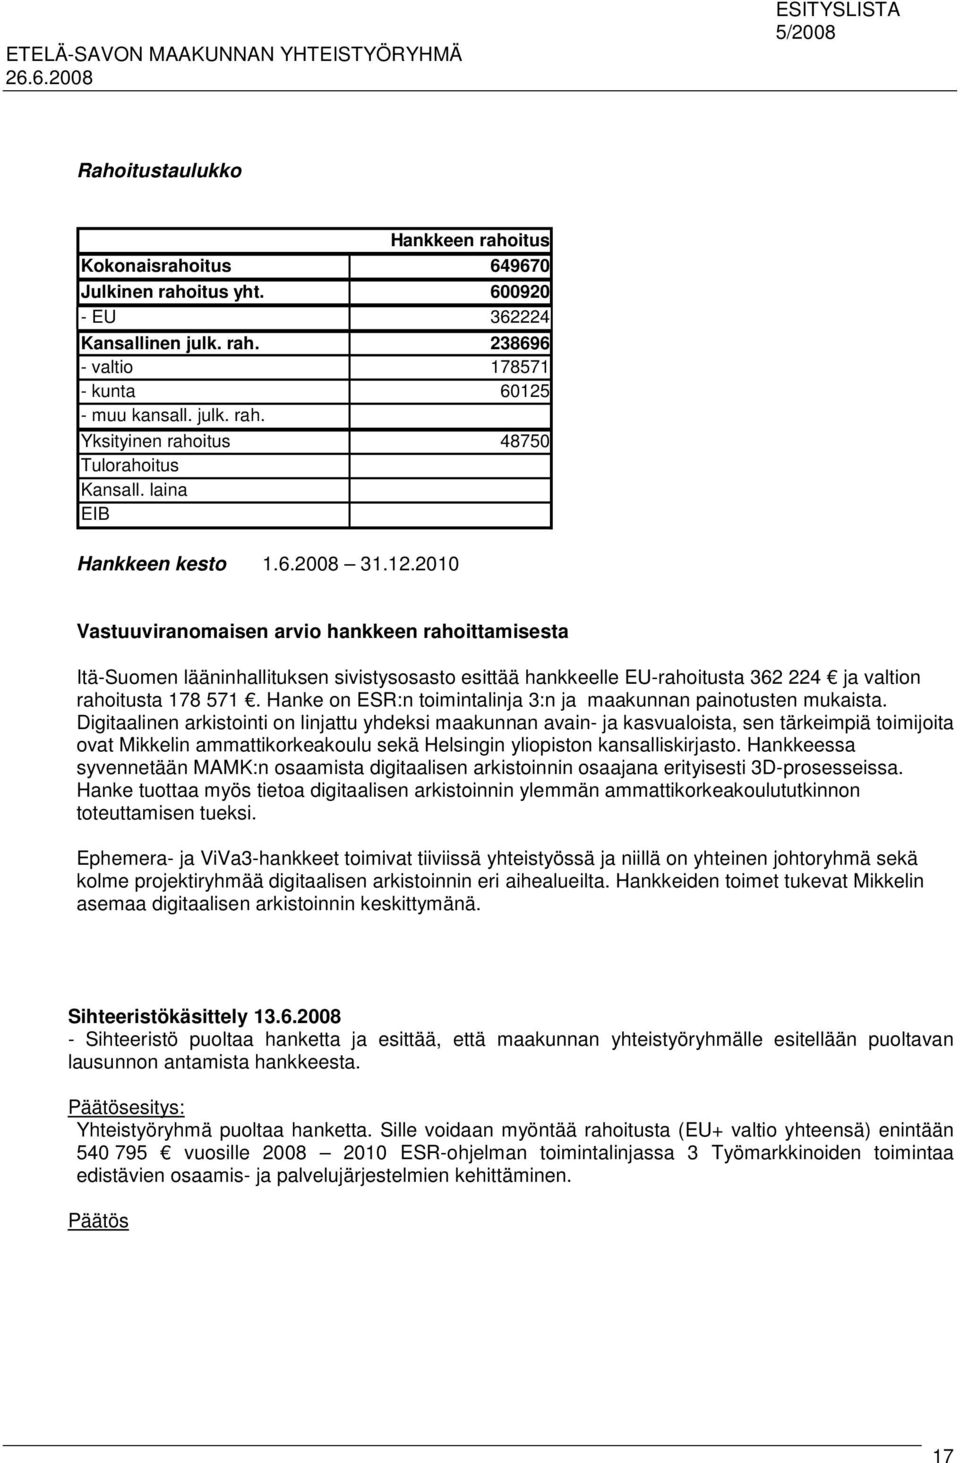 2010 Vastuuviranomaisen arvio hankkeen rahoittamisesta Itä-Suomen lääninhallituksen sivistysosasto esittää hankkeelle EU-rahoitusta 362 224 ja valtion rahoitusta 178 571.